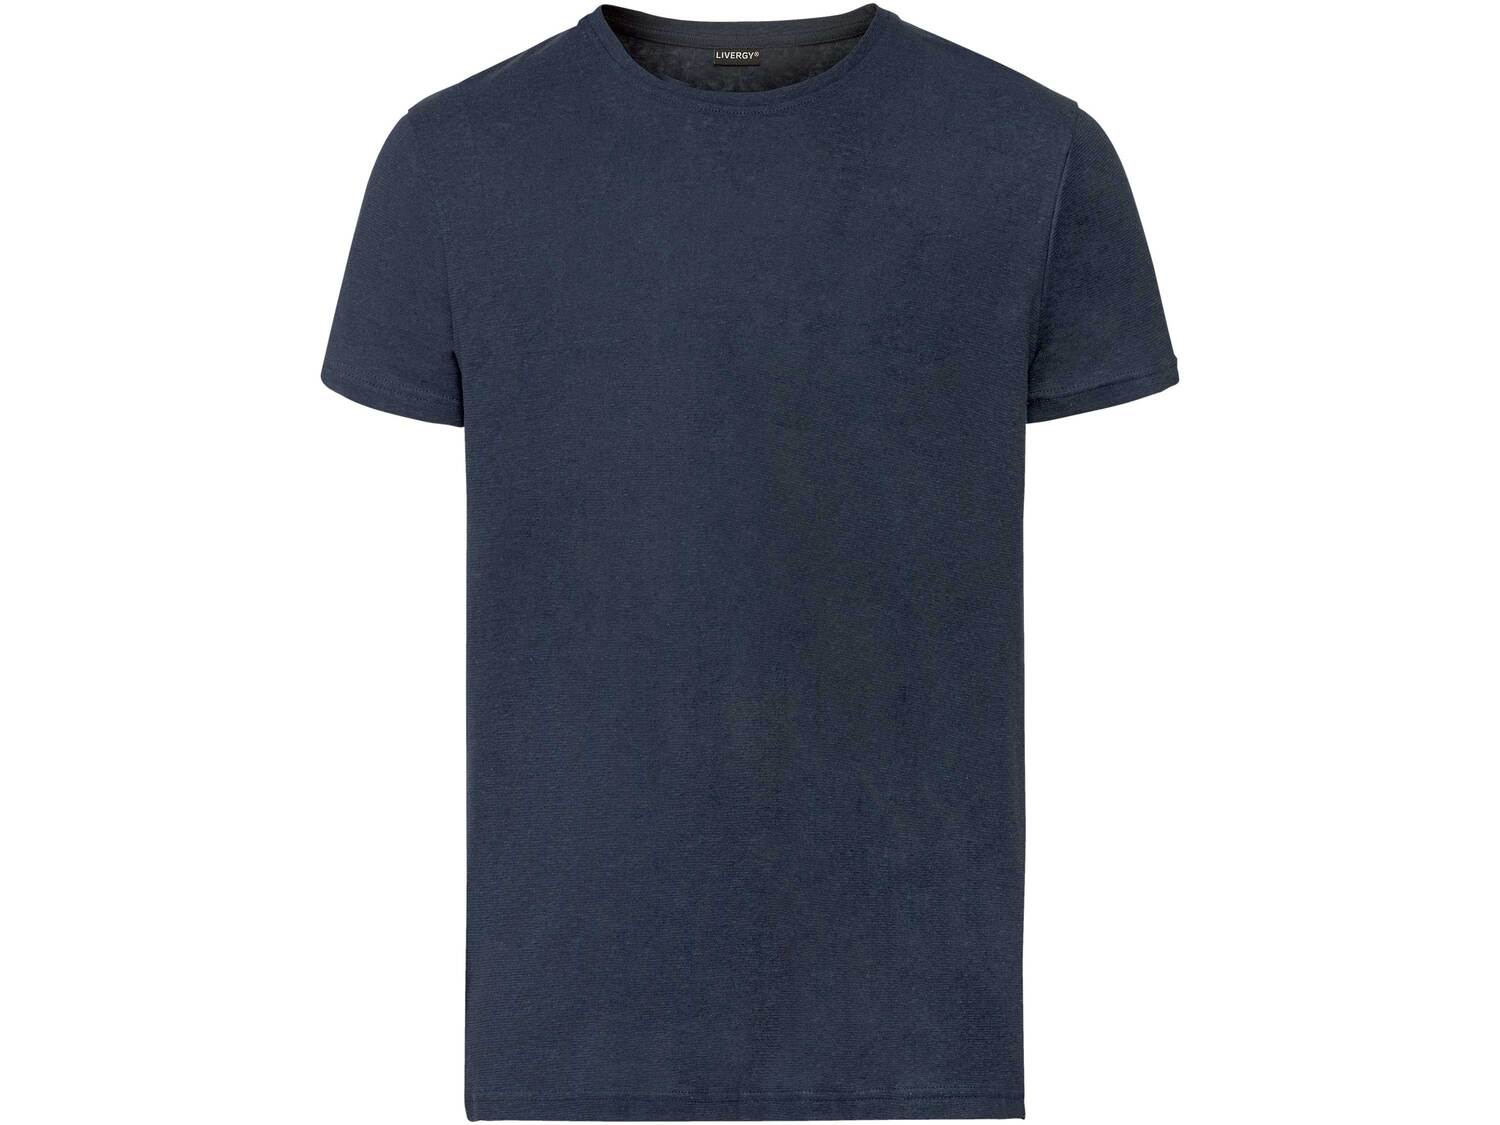 T-shirt en lin , le prix 6.99 € 
- Du S au XL selon modèle
- Ex. 53 % lin ...